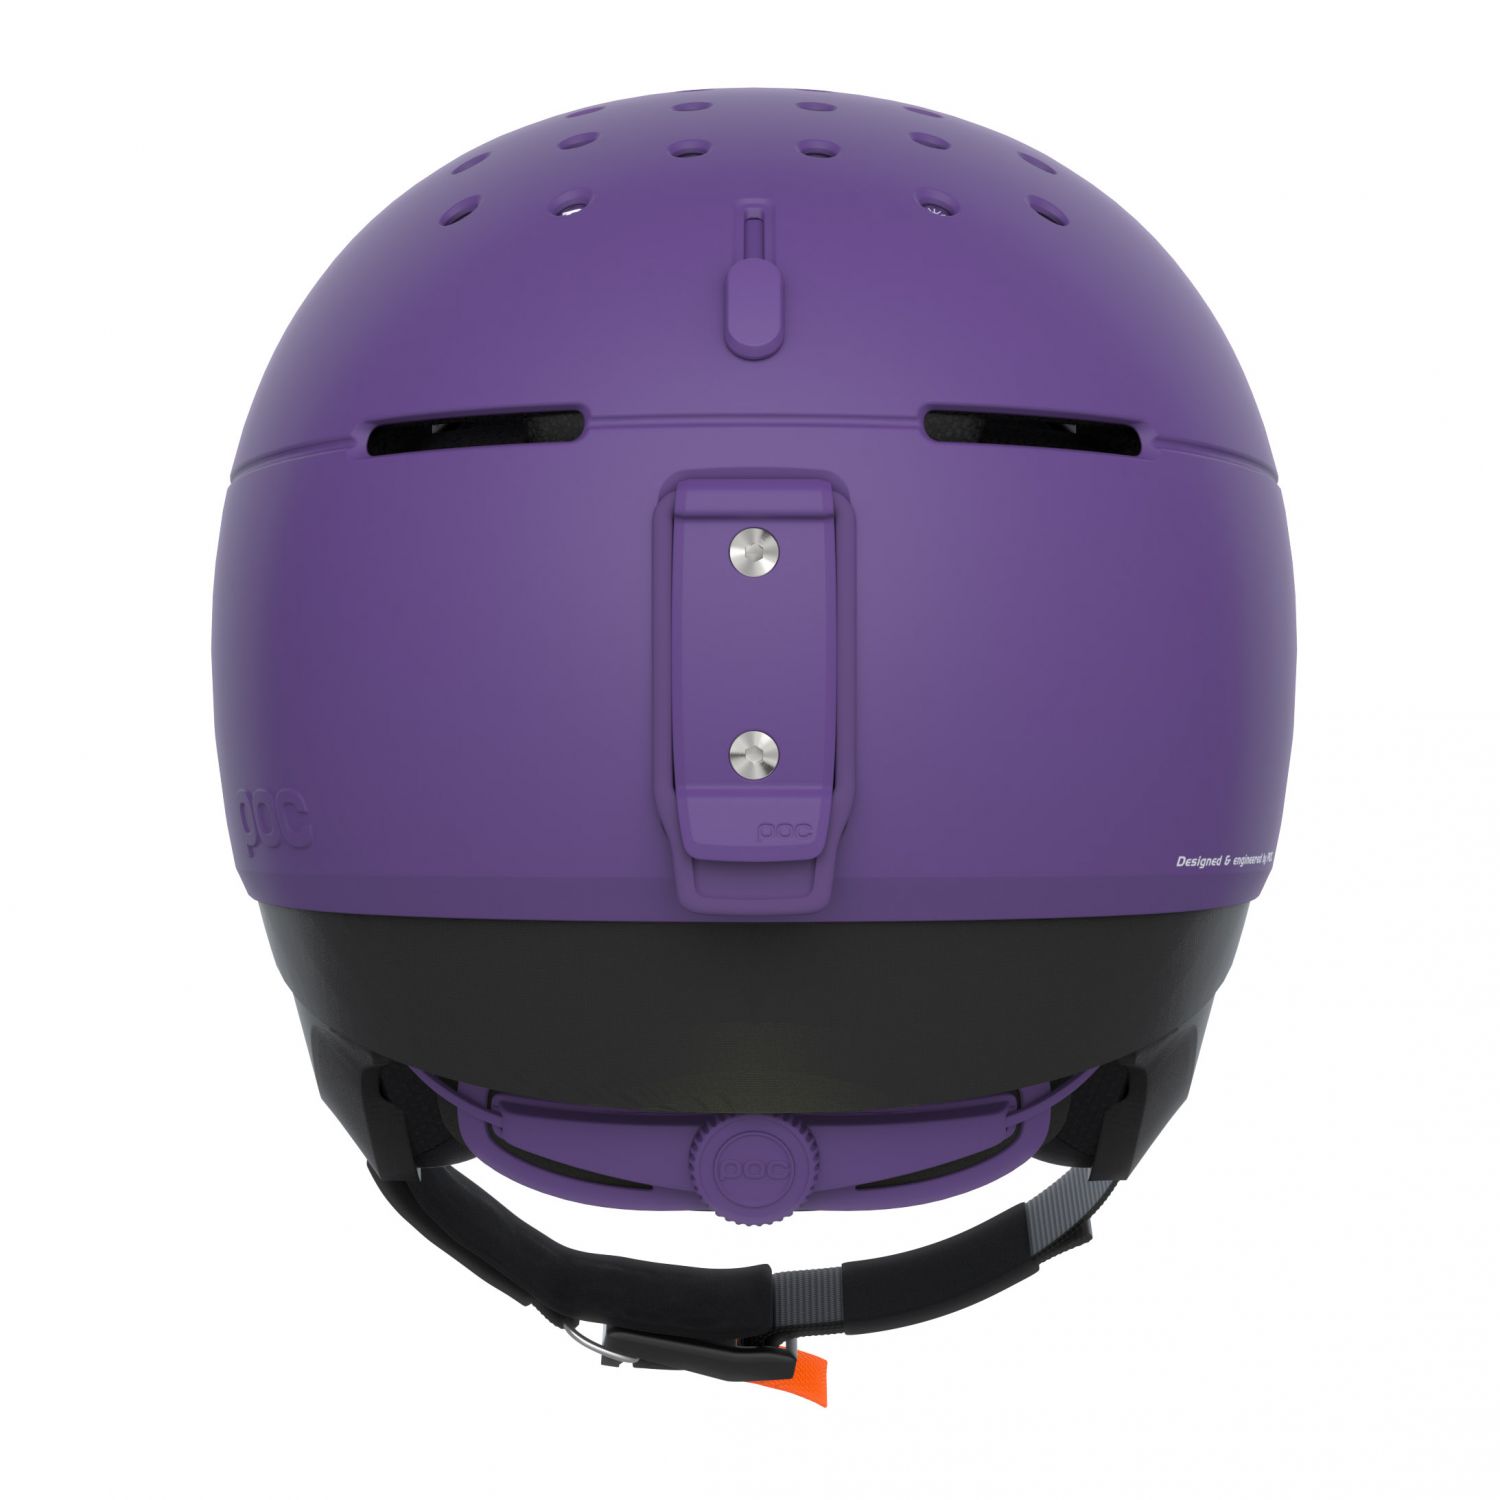 POC Meninx Skihjelm, Sapphire Purple Matt